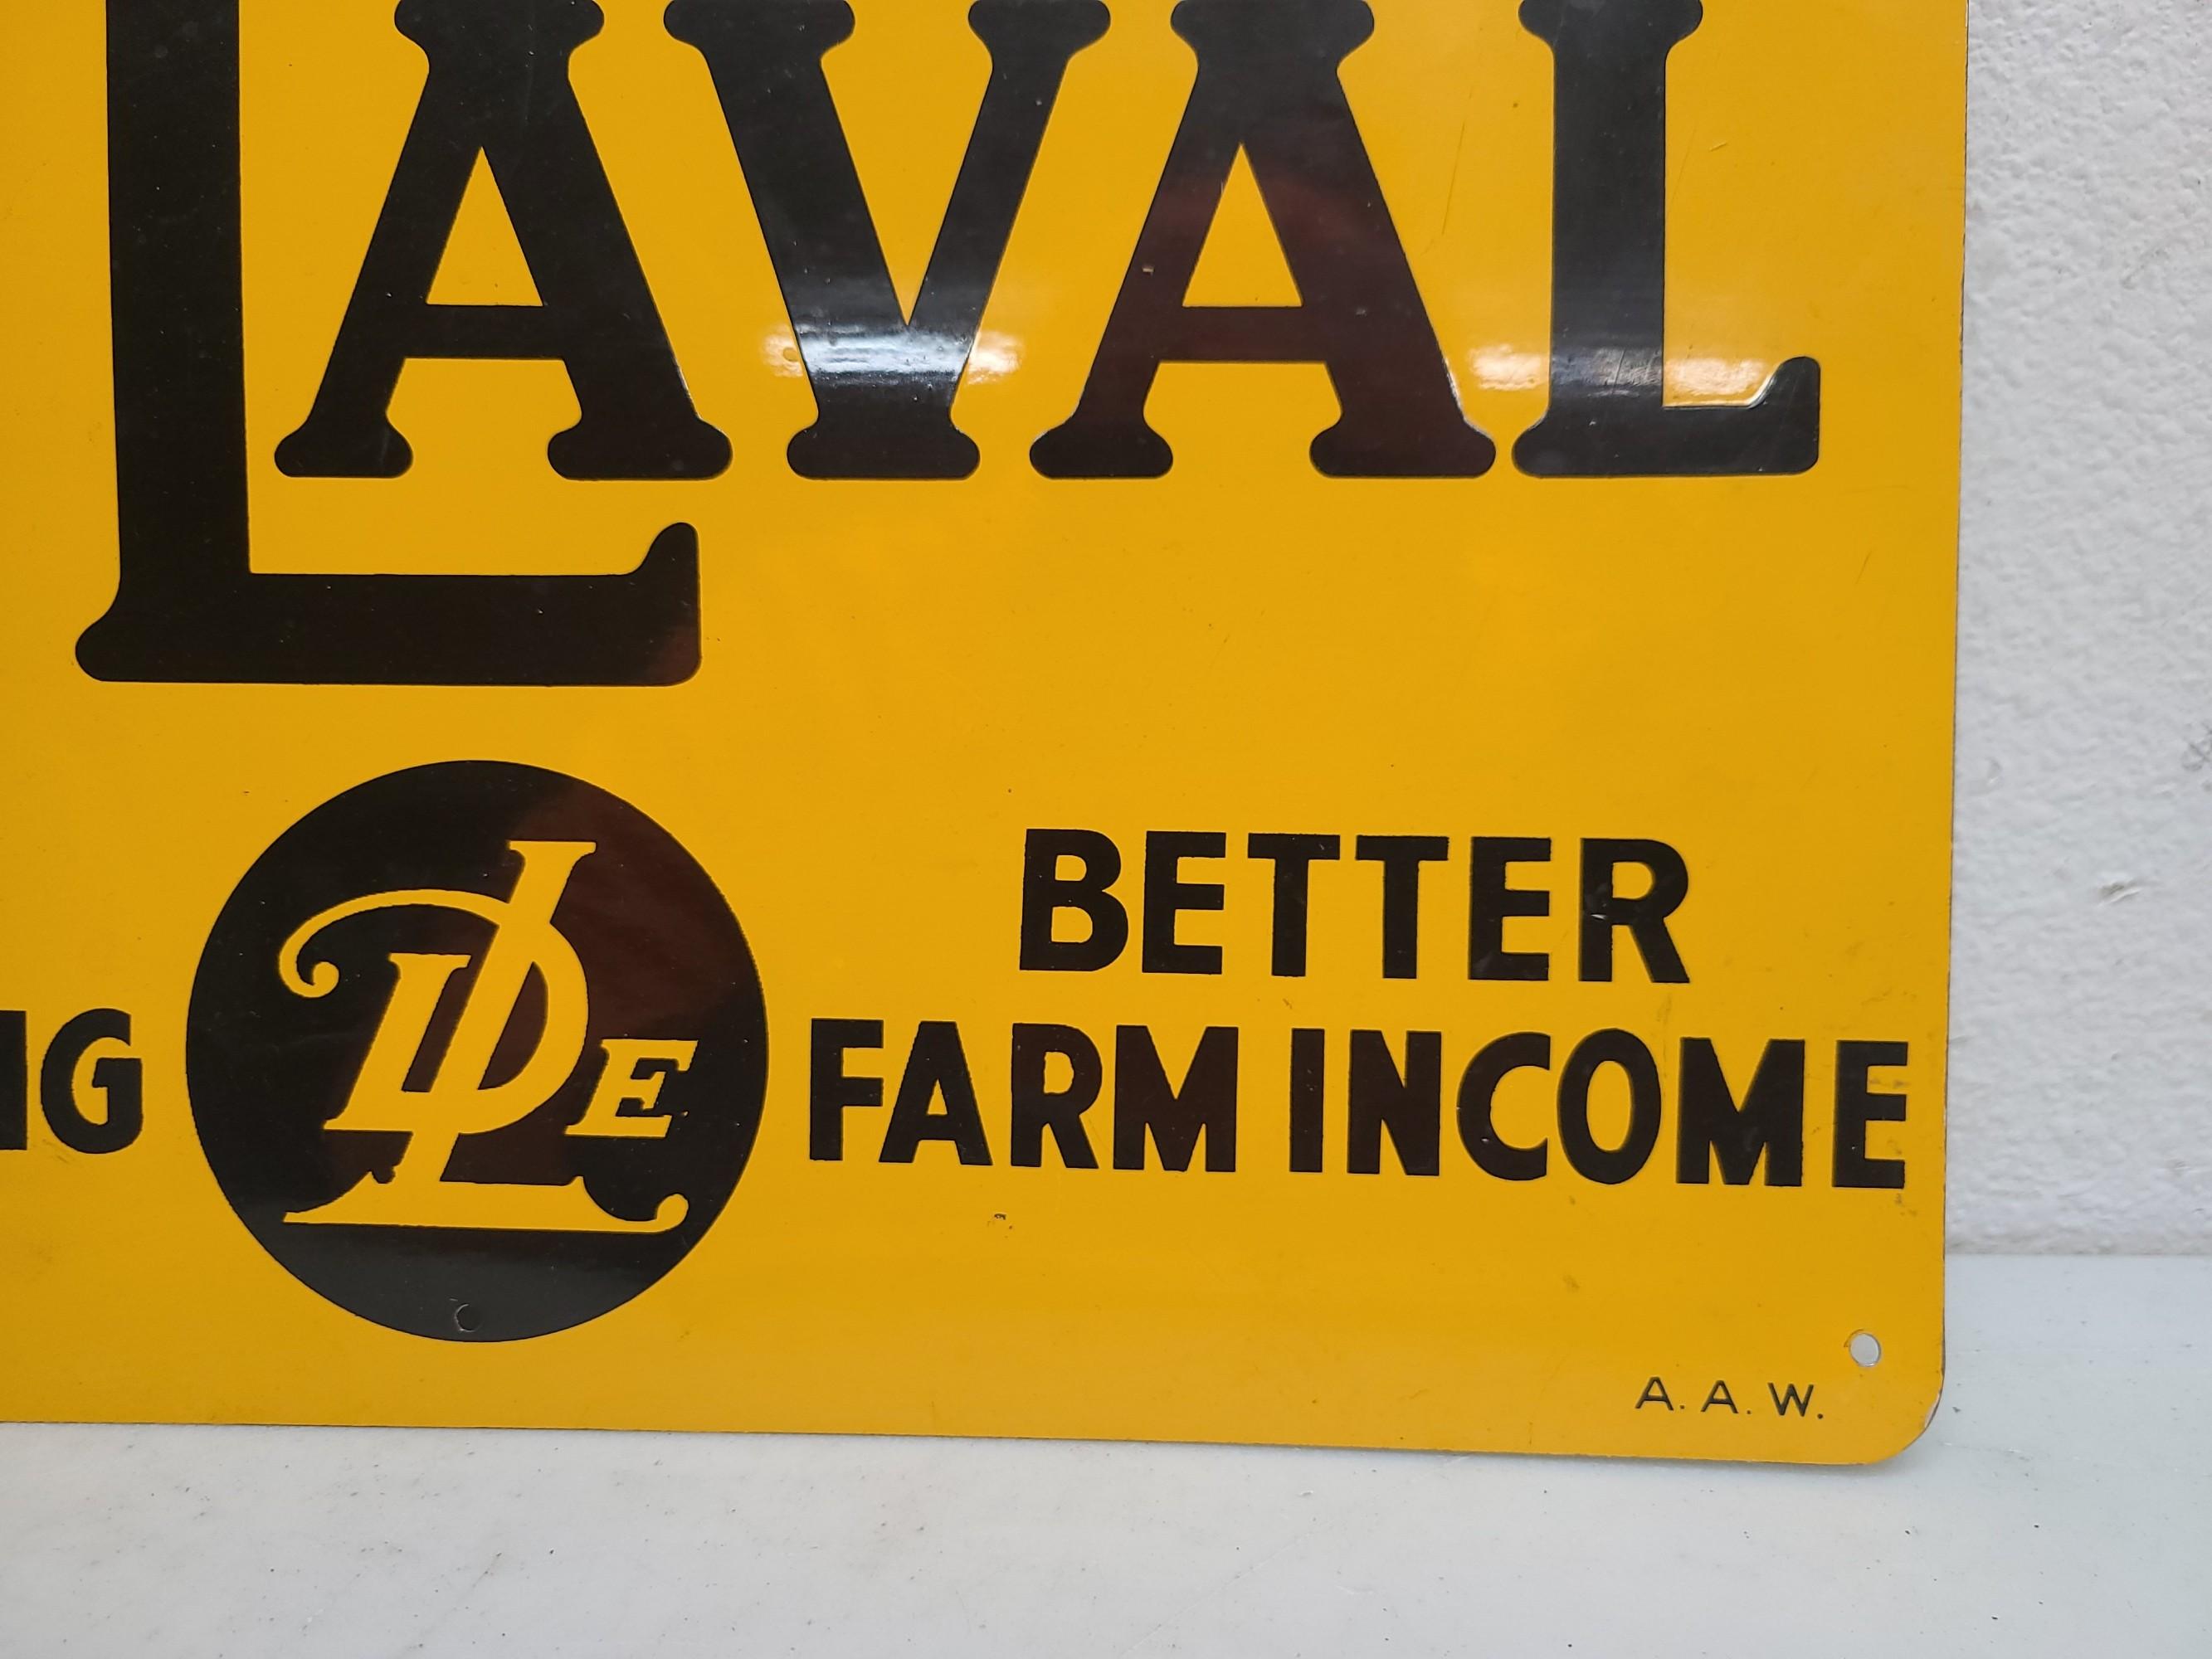 SST De Laval Better Farm Living Sign